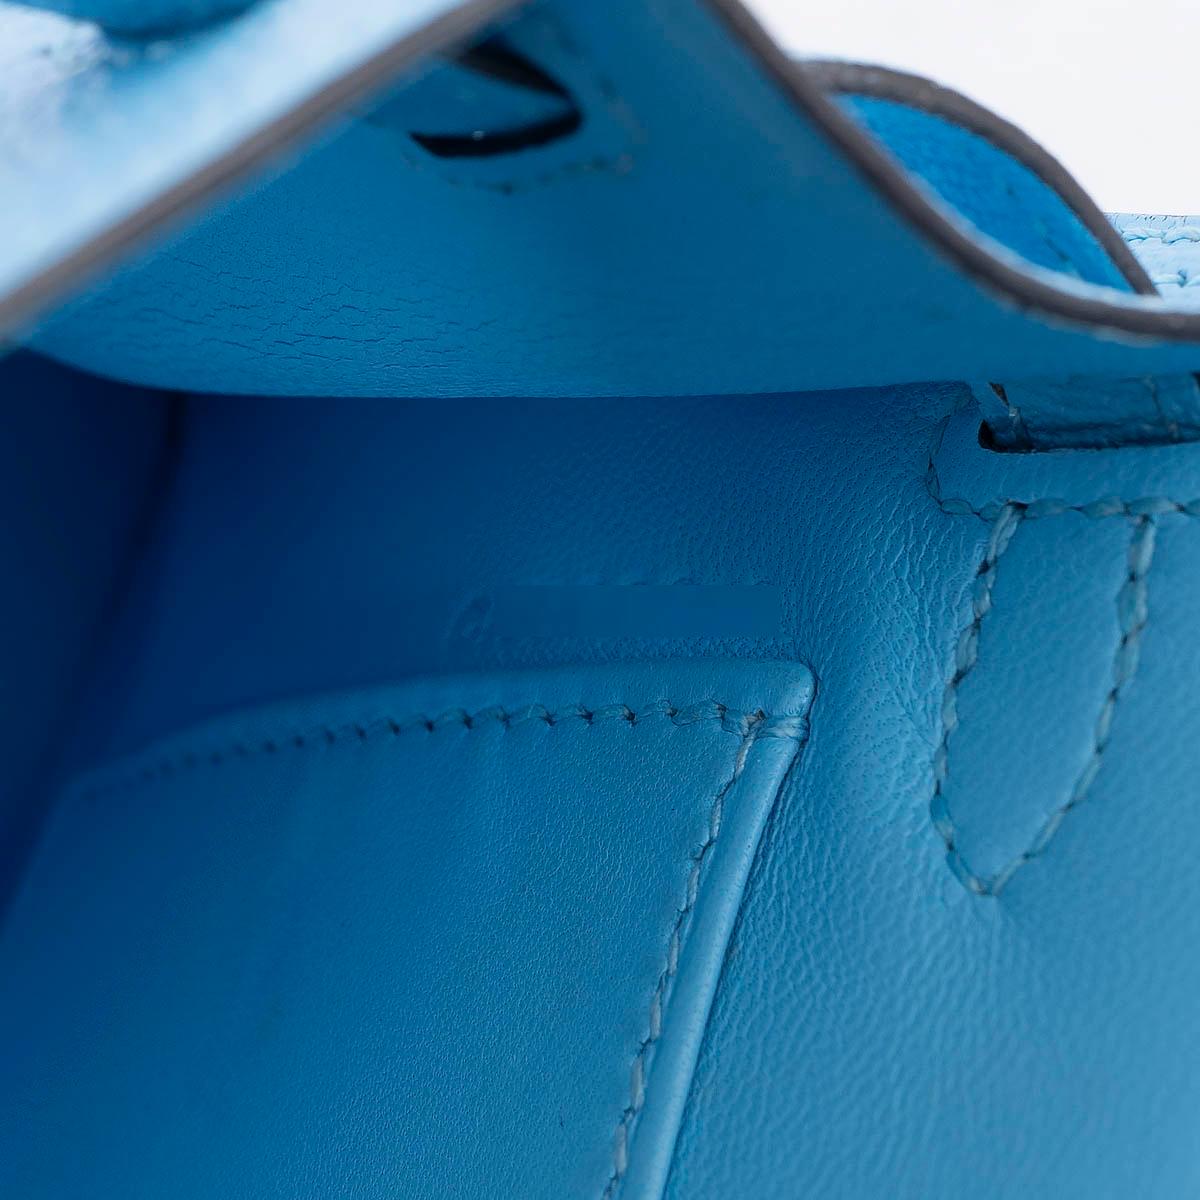 HERMES Celeste blue Mysore leather MINI KELLY 20 SELLIER Bag Phw 3